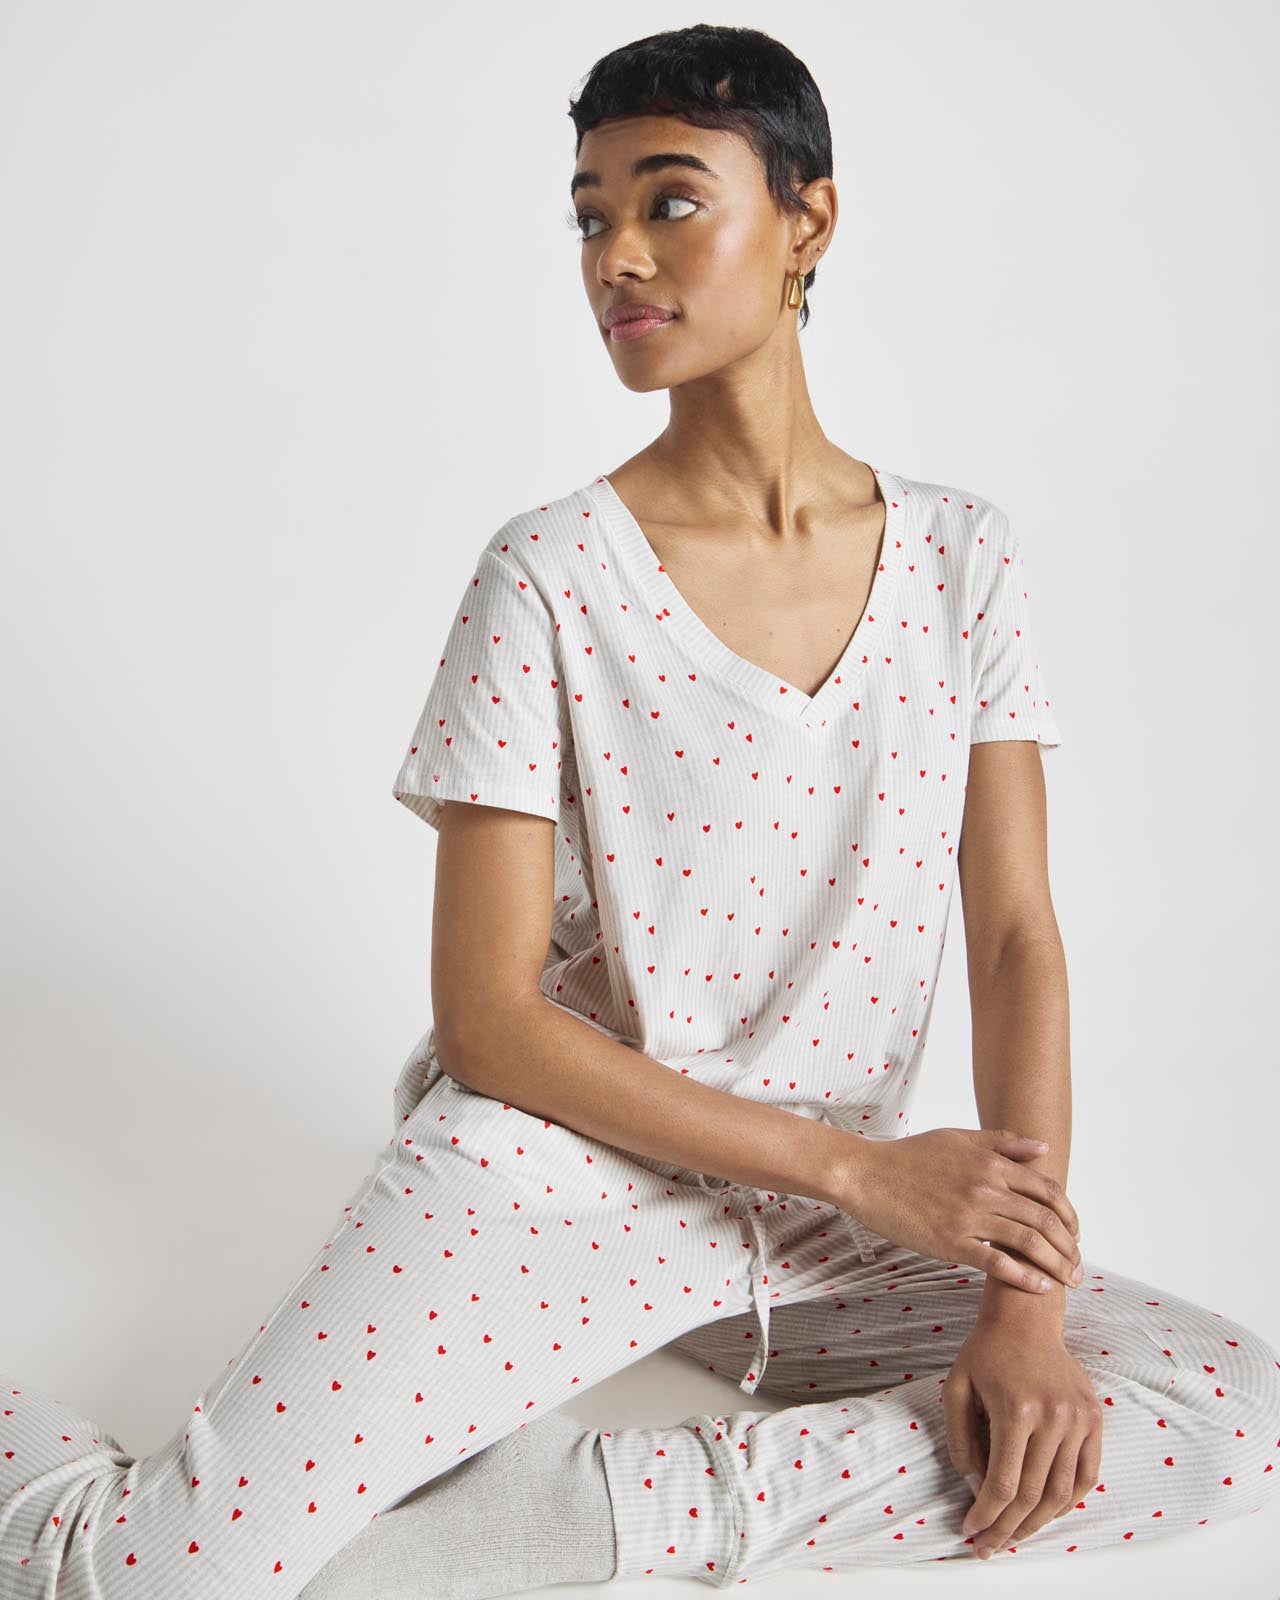 Women's Cotton Pajamas Set Soft Pjs Long Sleeve Button Down High-waist  Sleepwear 